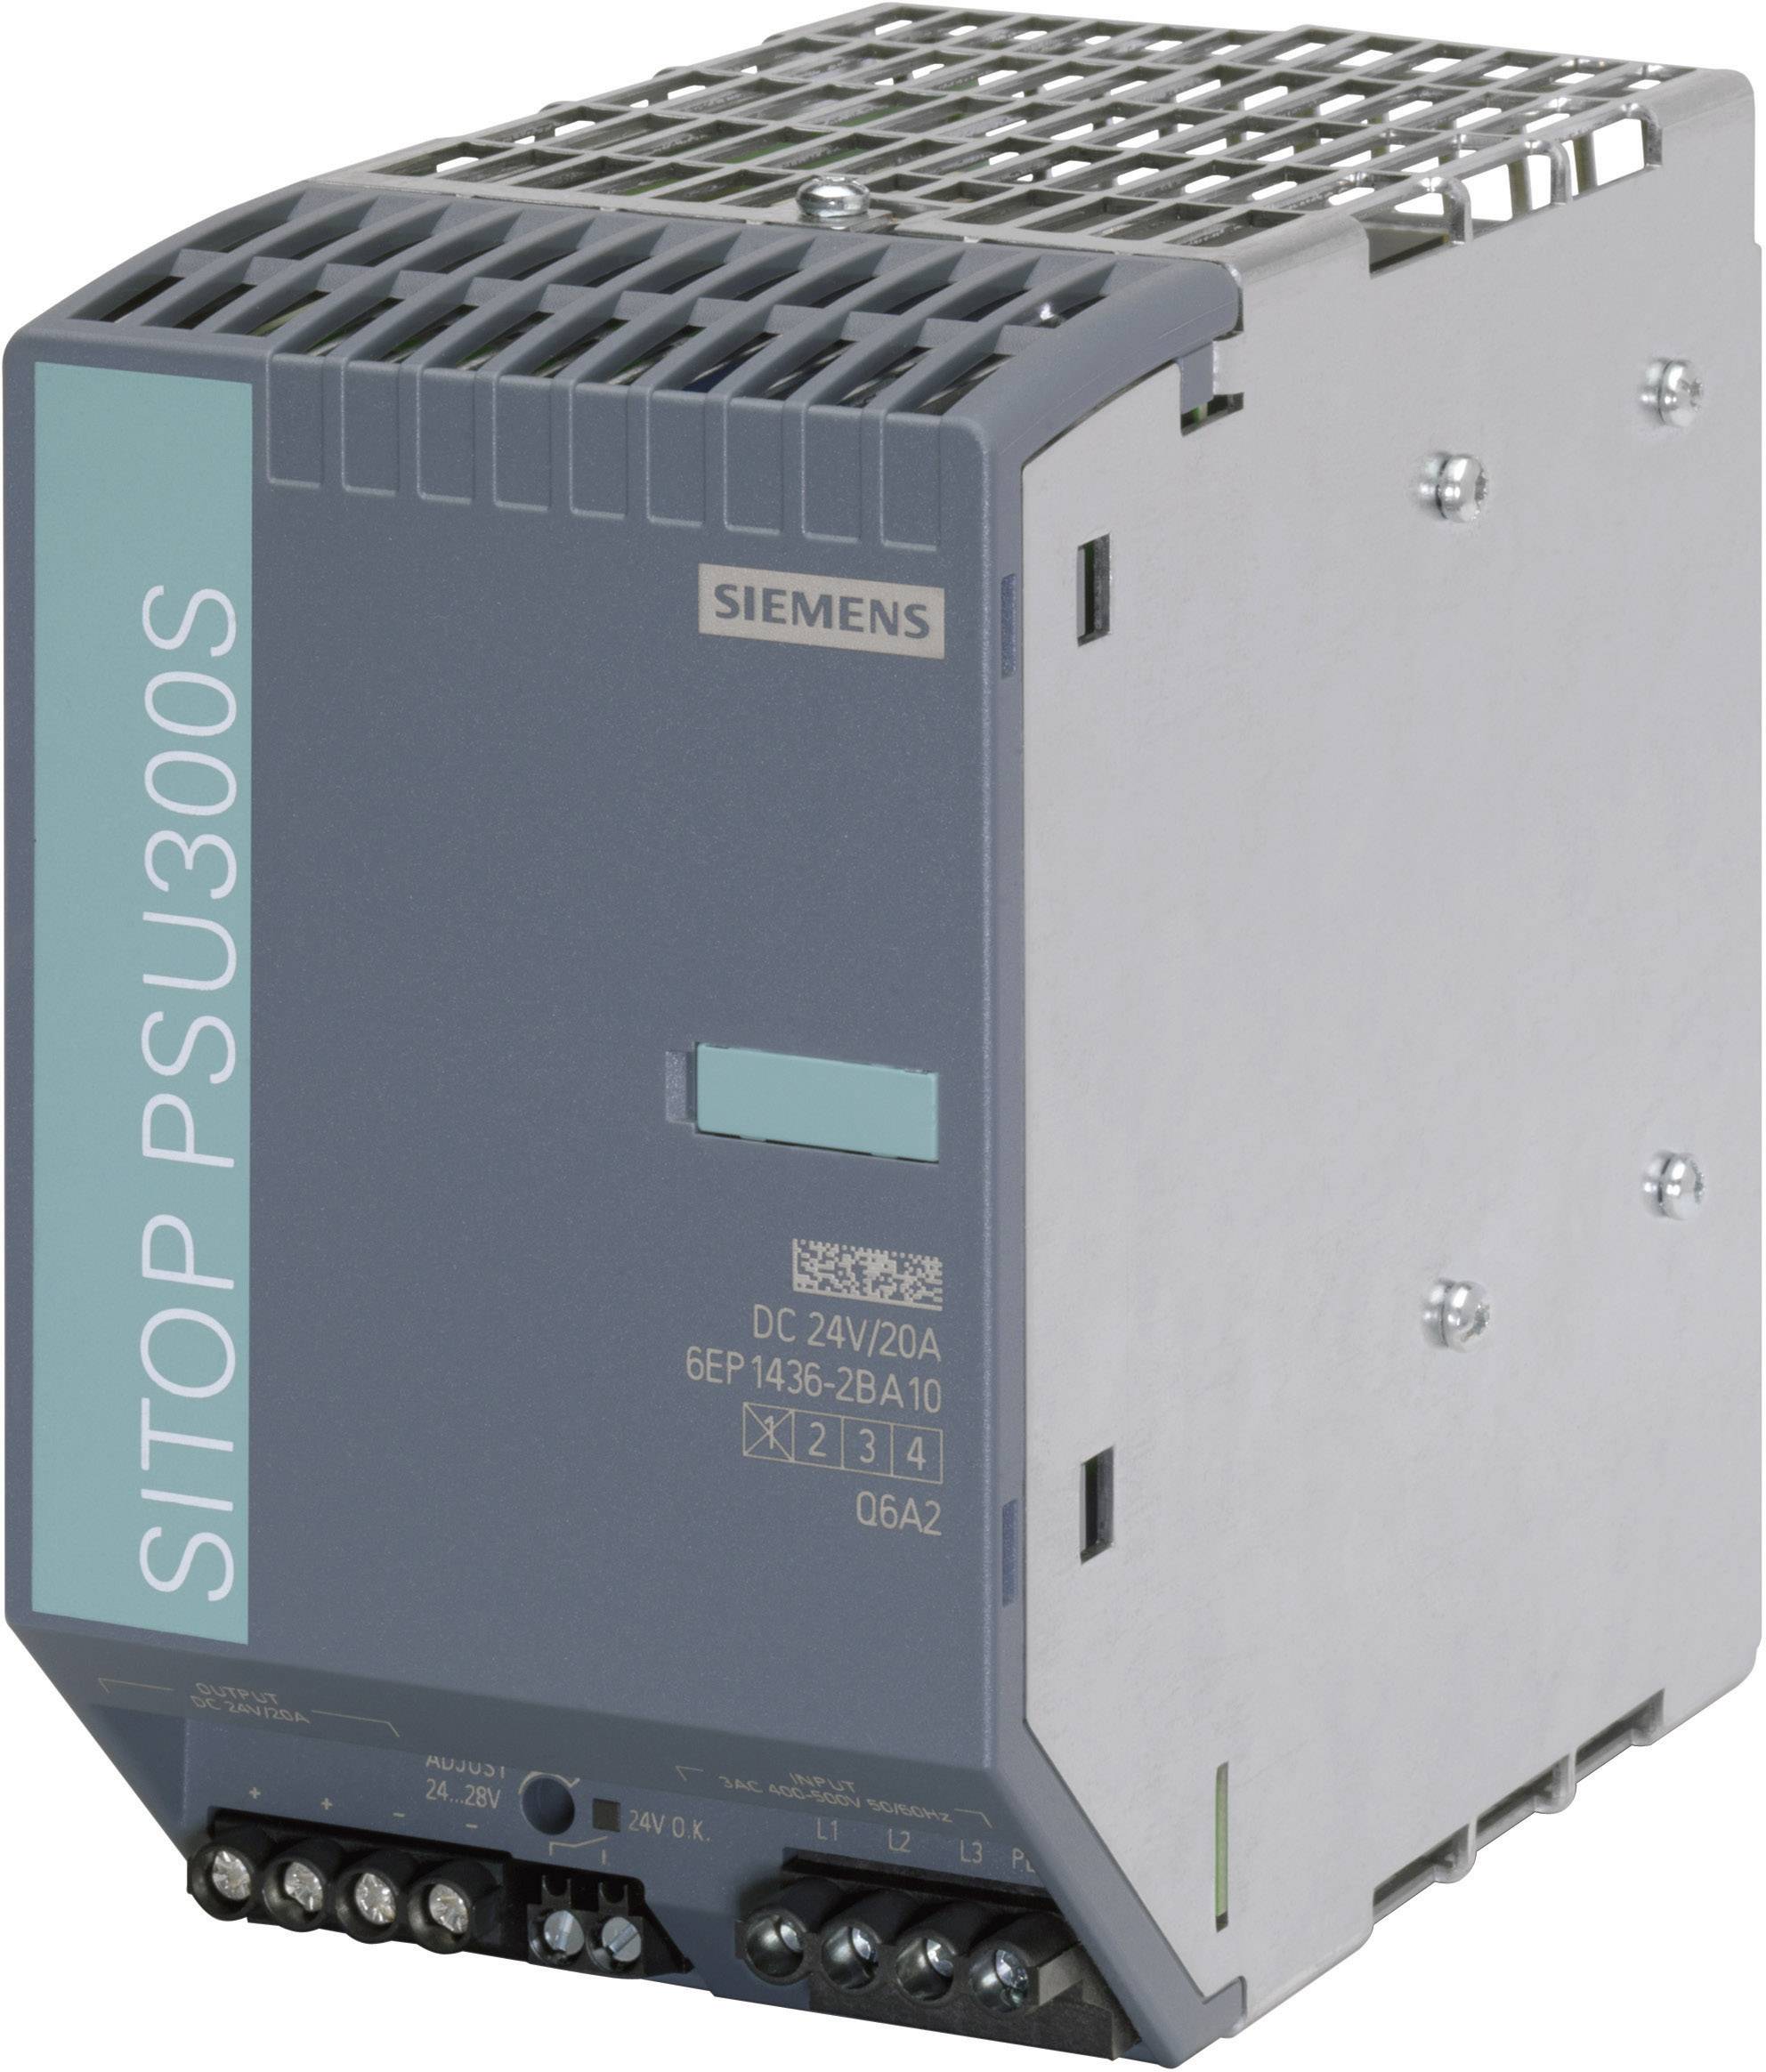 SIEMENS Hutschienen-Netzteil (DIN-Rail) Siemens SITOP PSU300S 24V/20A 24 V/DC 20 A 480 W 1 x